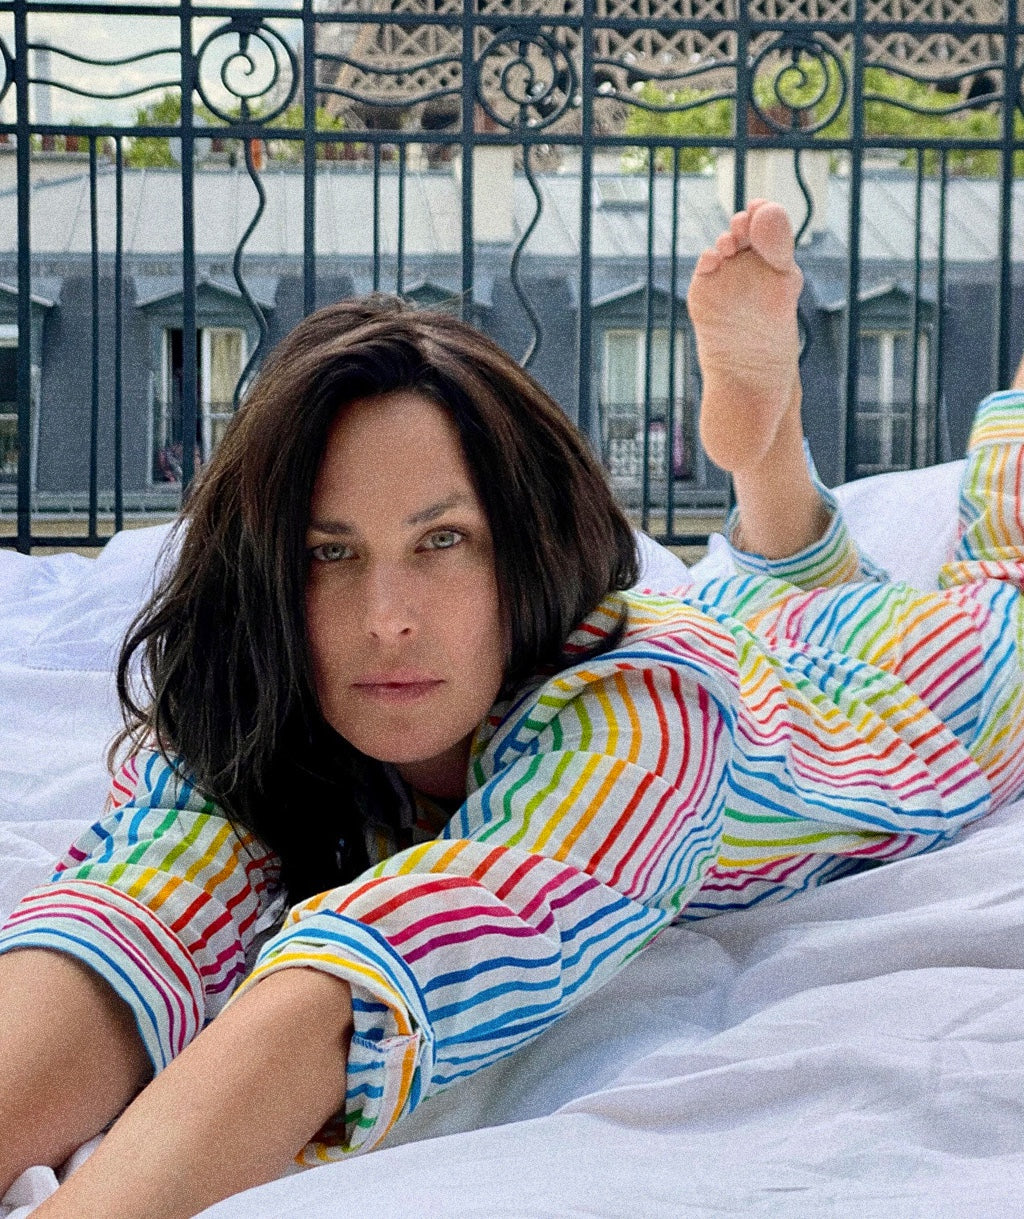 Women's Rainbow Pajamas